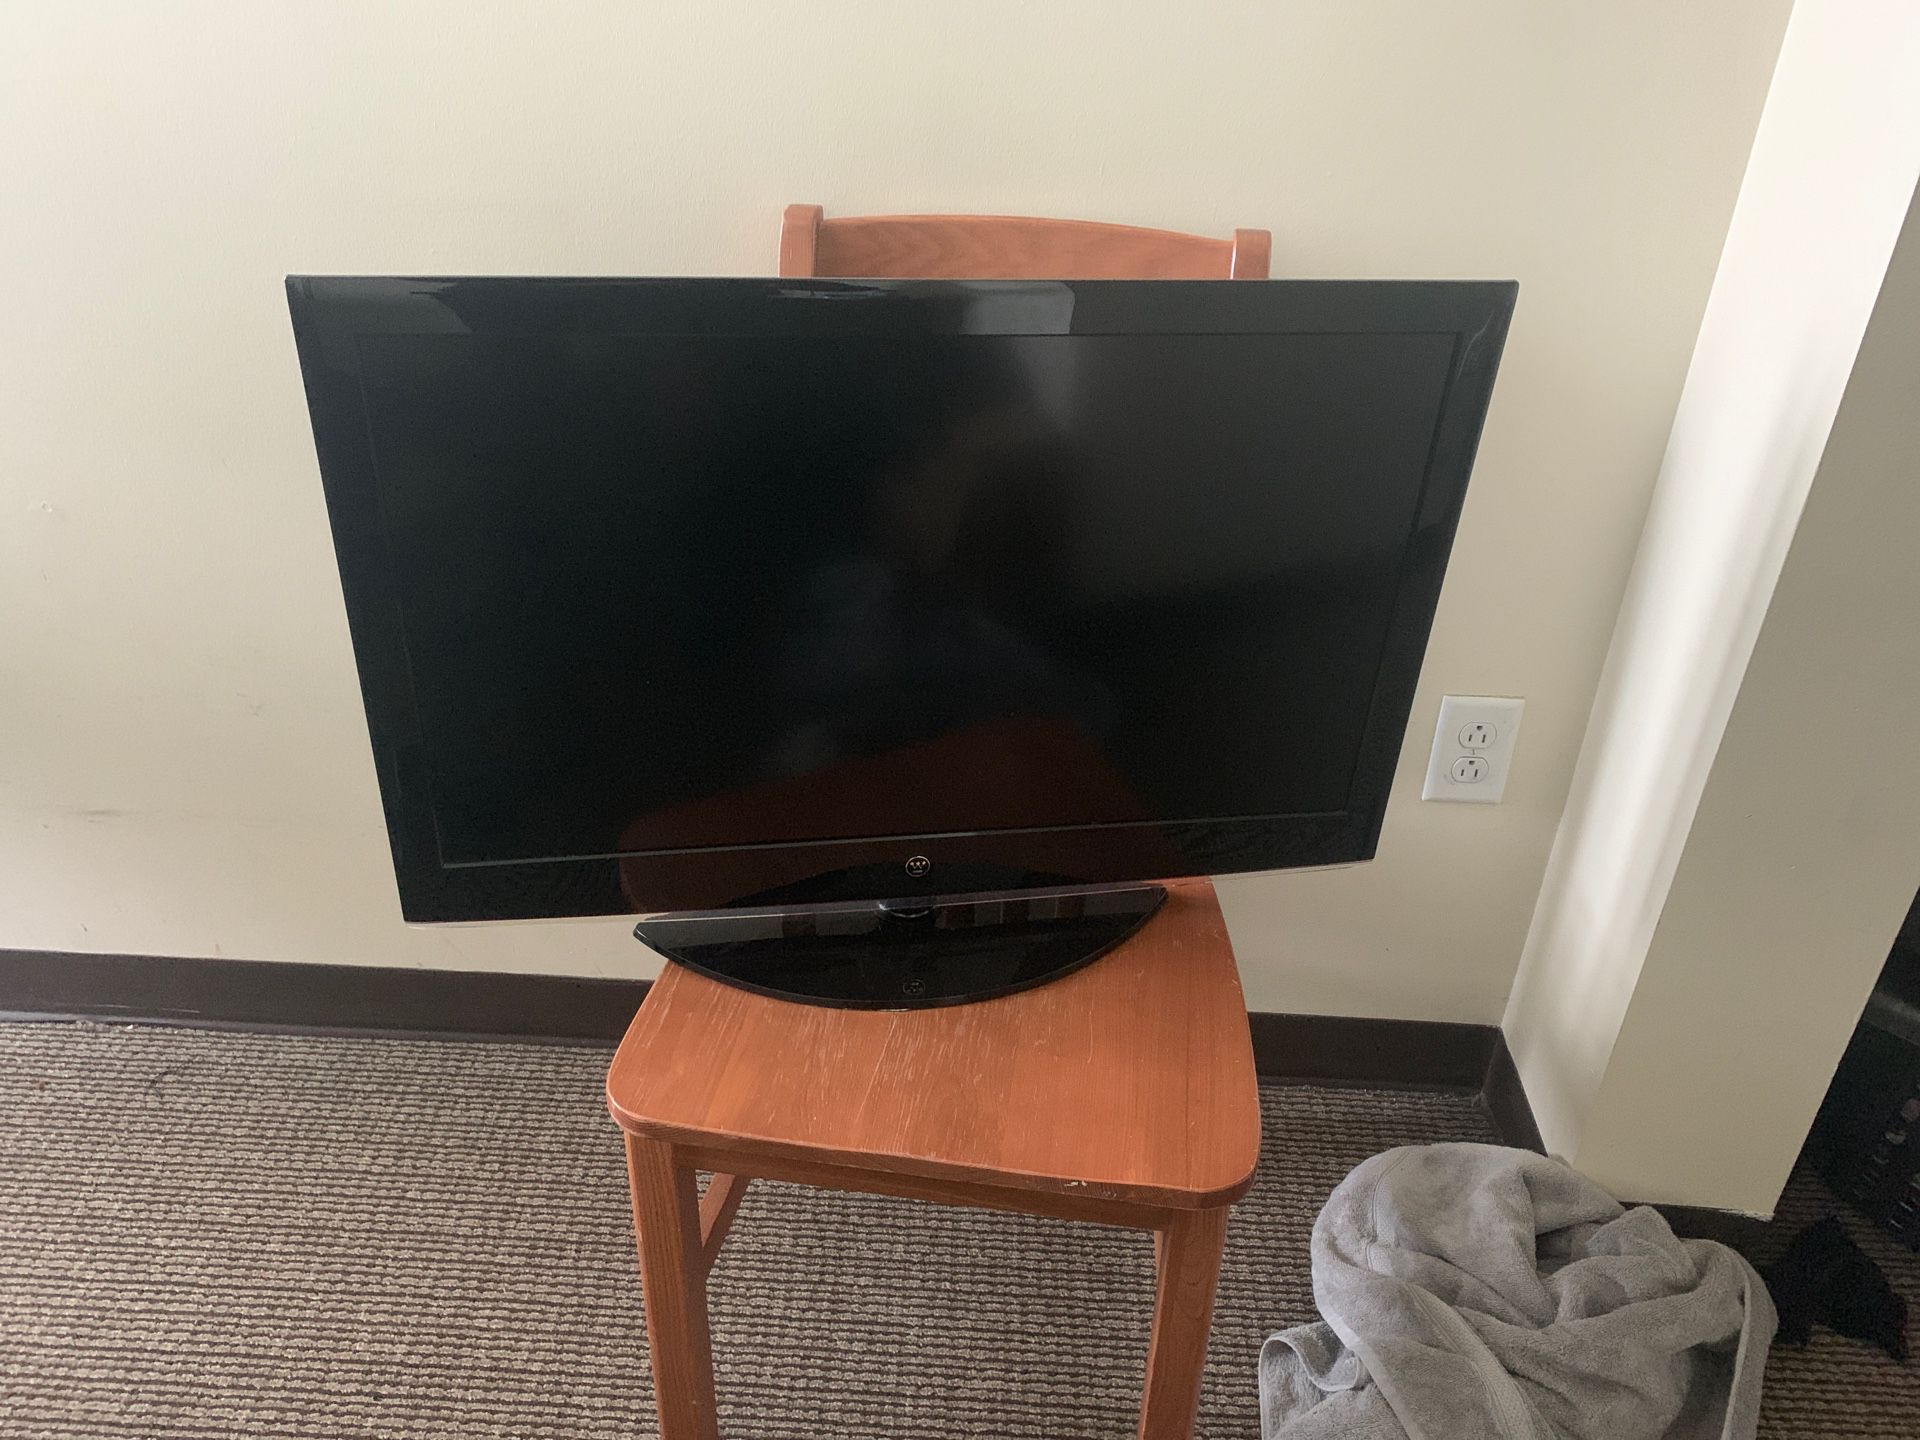 32 inch tv for sale(no remote)